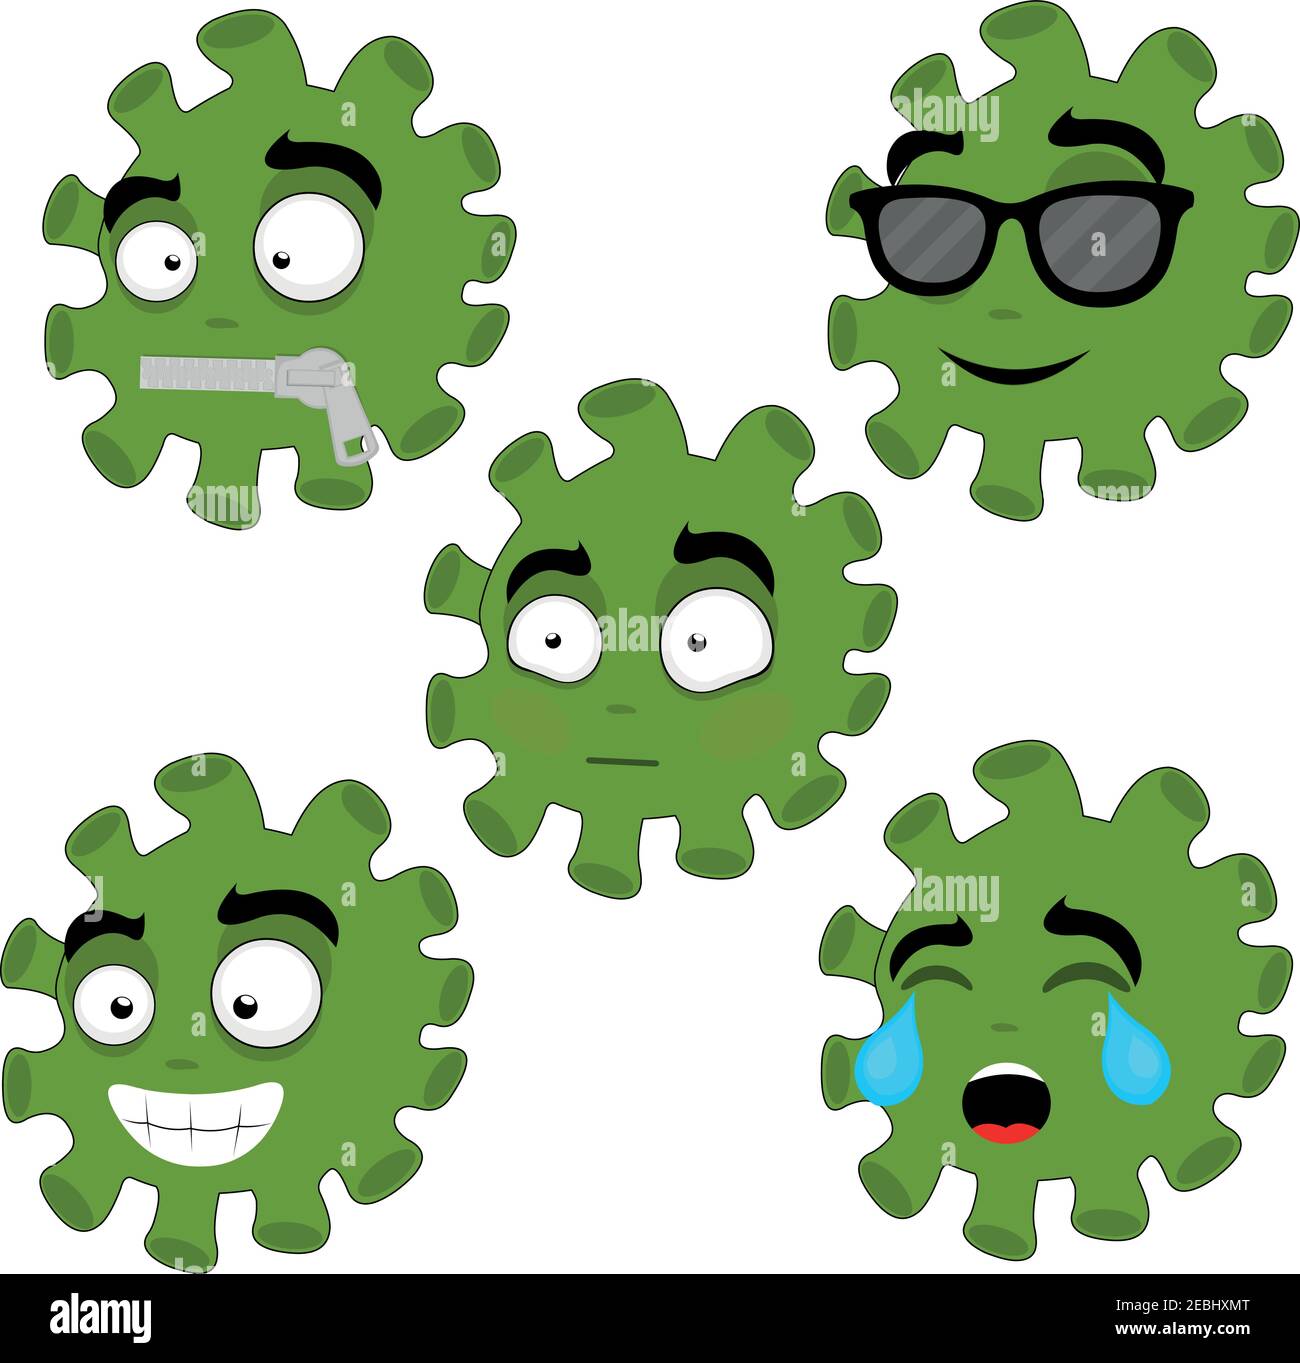 Illustrazione vettoriale di emoticon di coronavirus cartoon con diverse espressioni Illustrazione Vettoriale